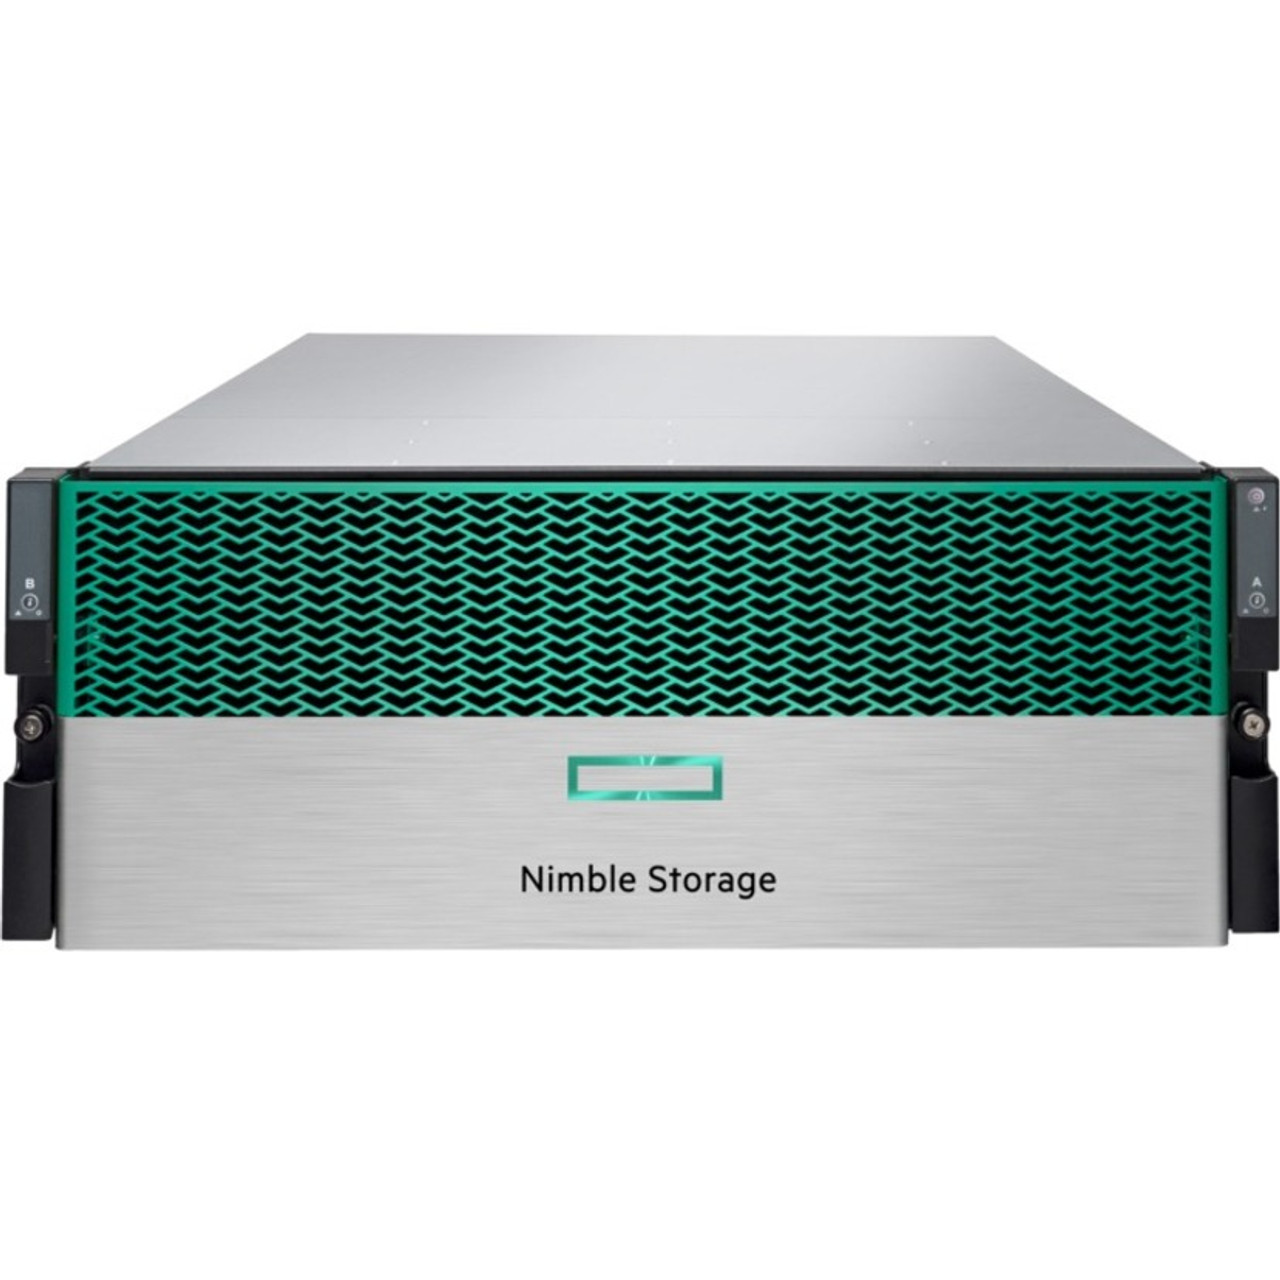 Nimble Storage 960 GB Solid State Drive - Internal - Q8B63A